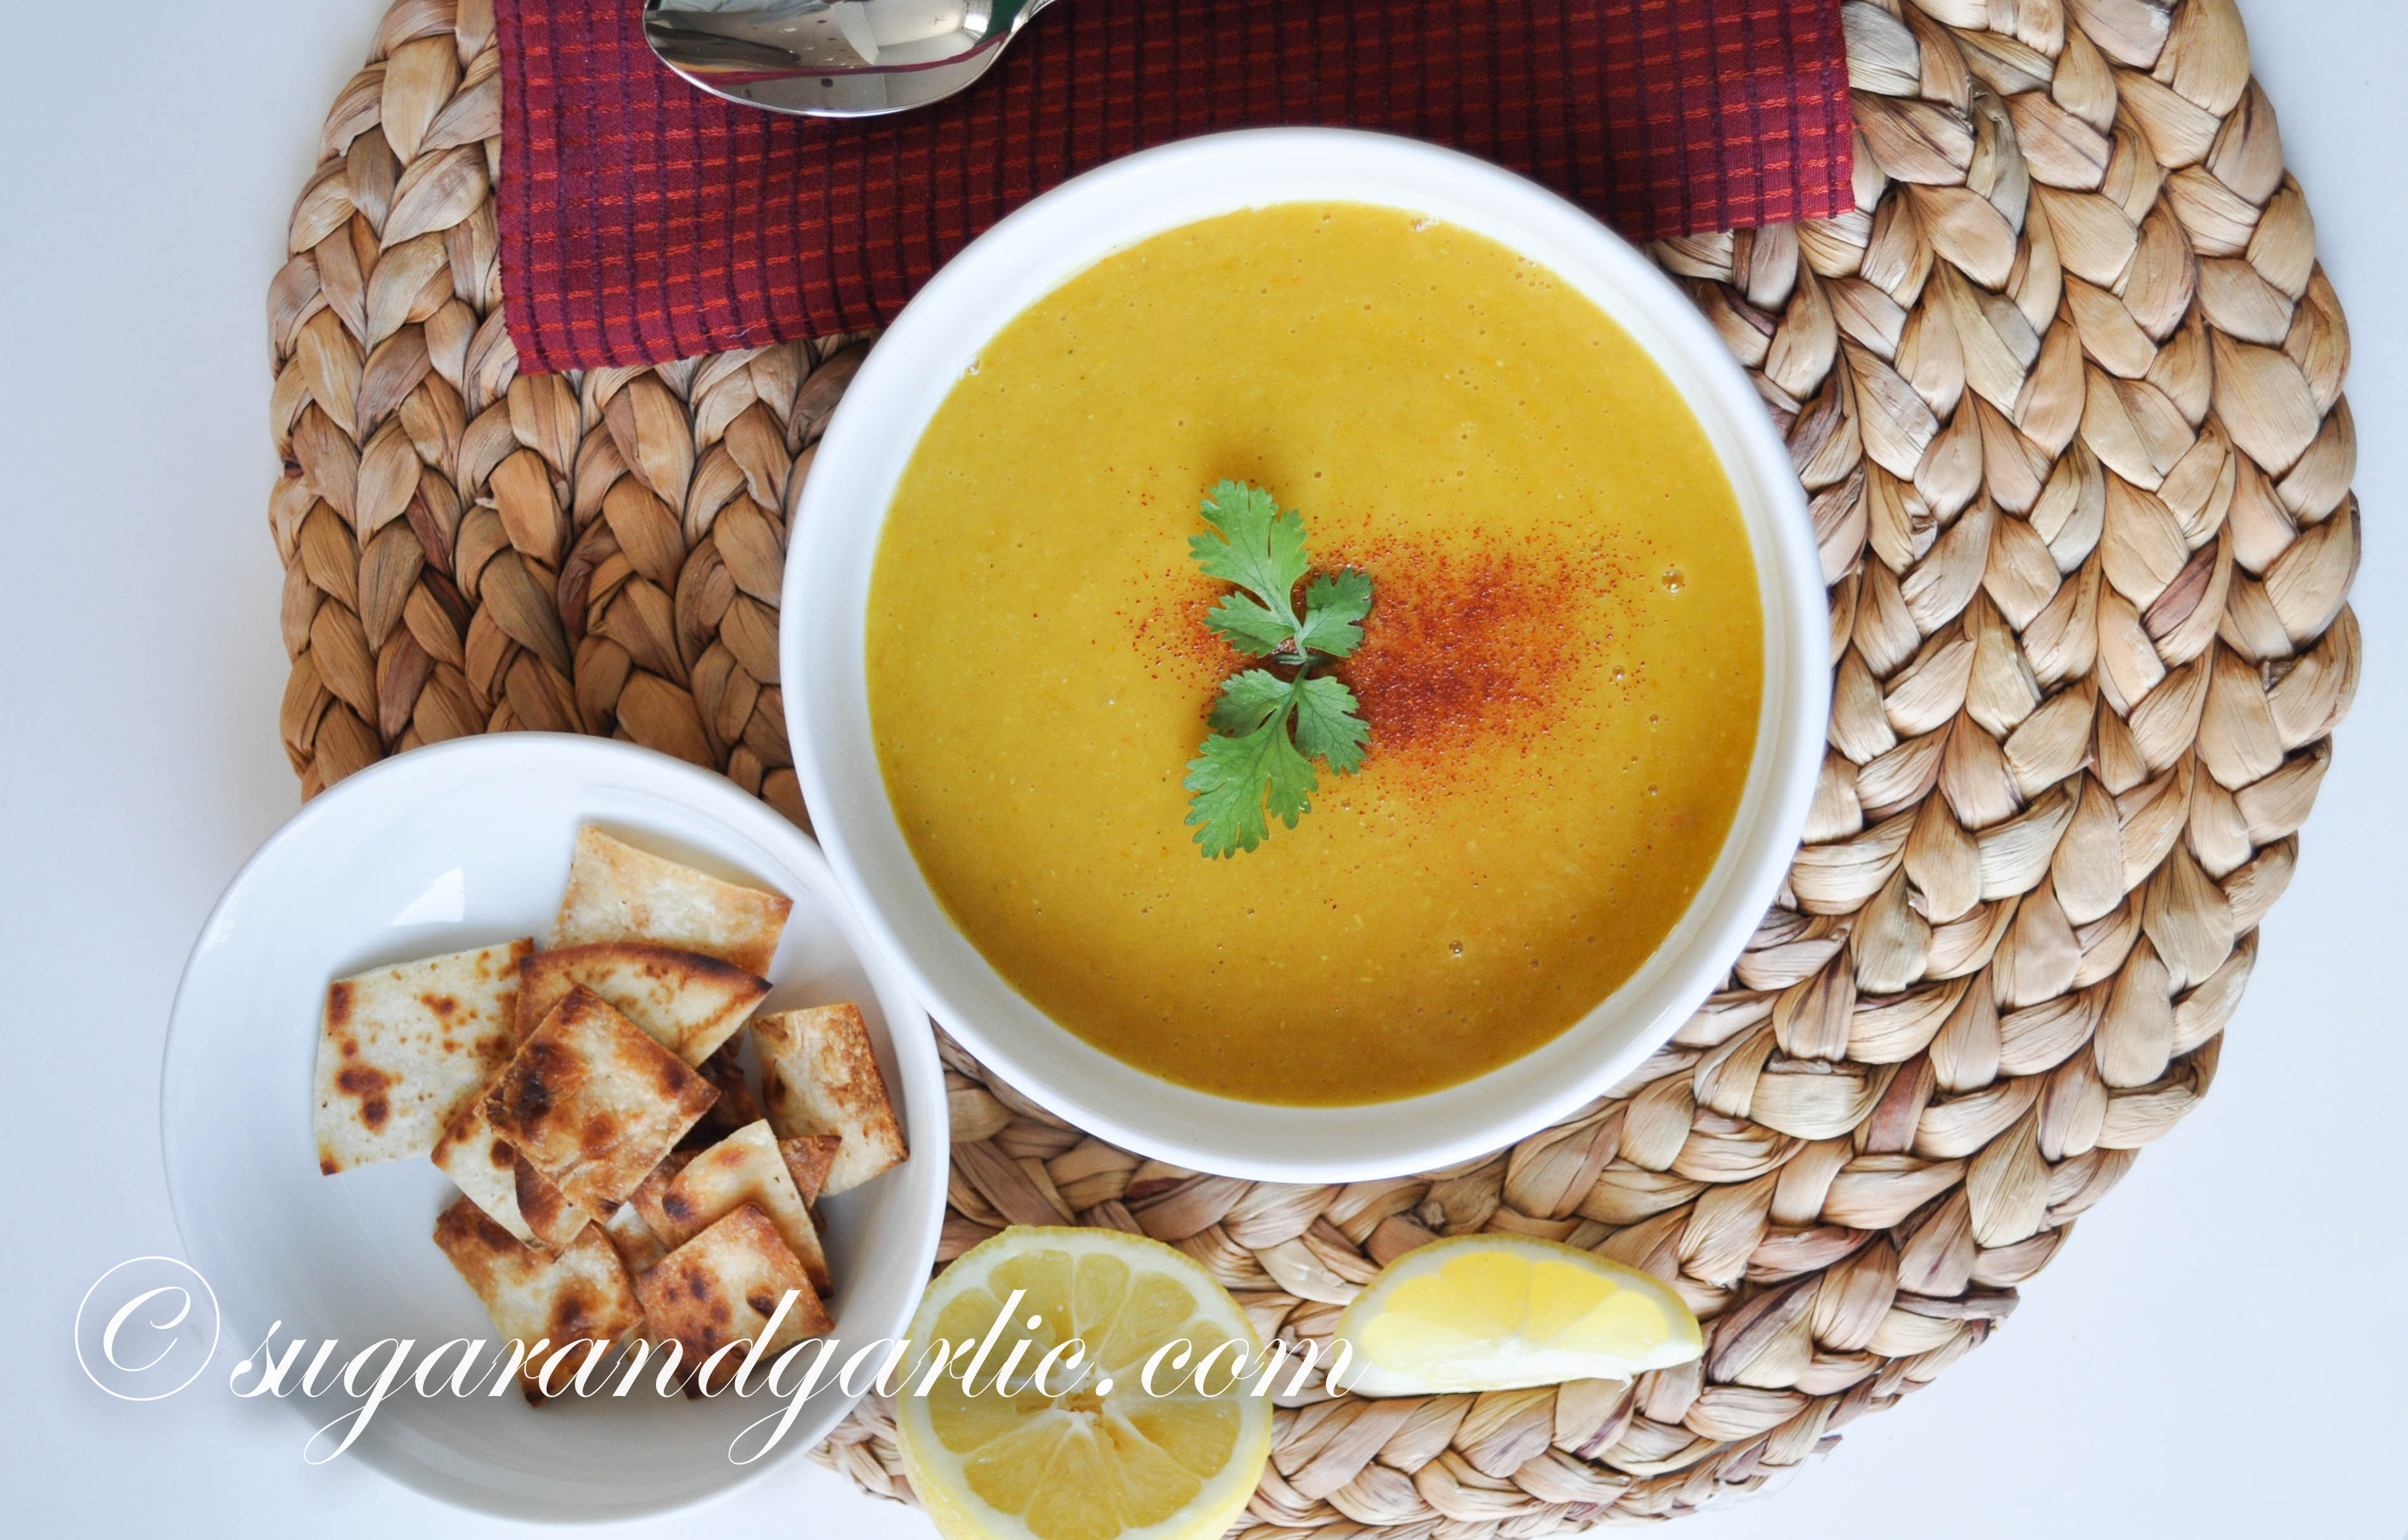 Creamy lentil soup (shorbat ads)